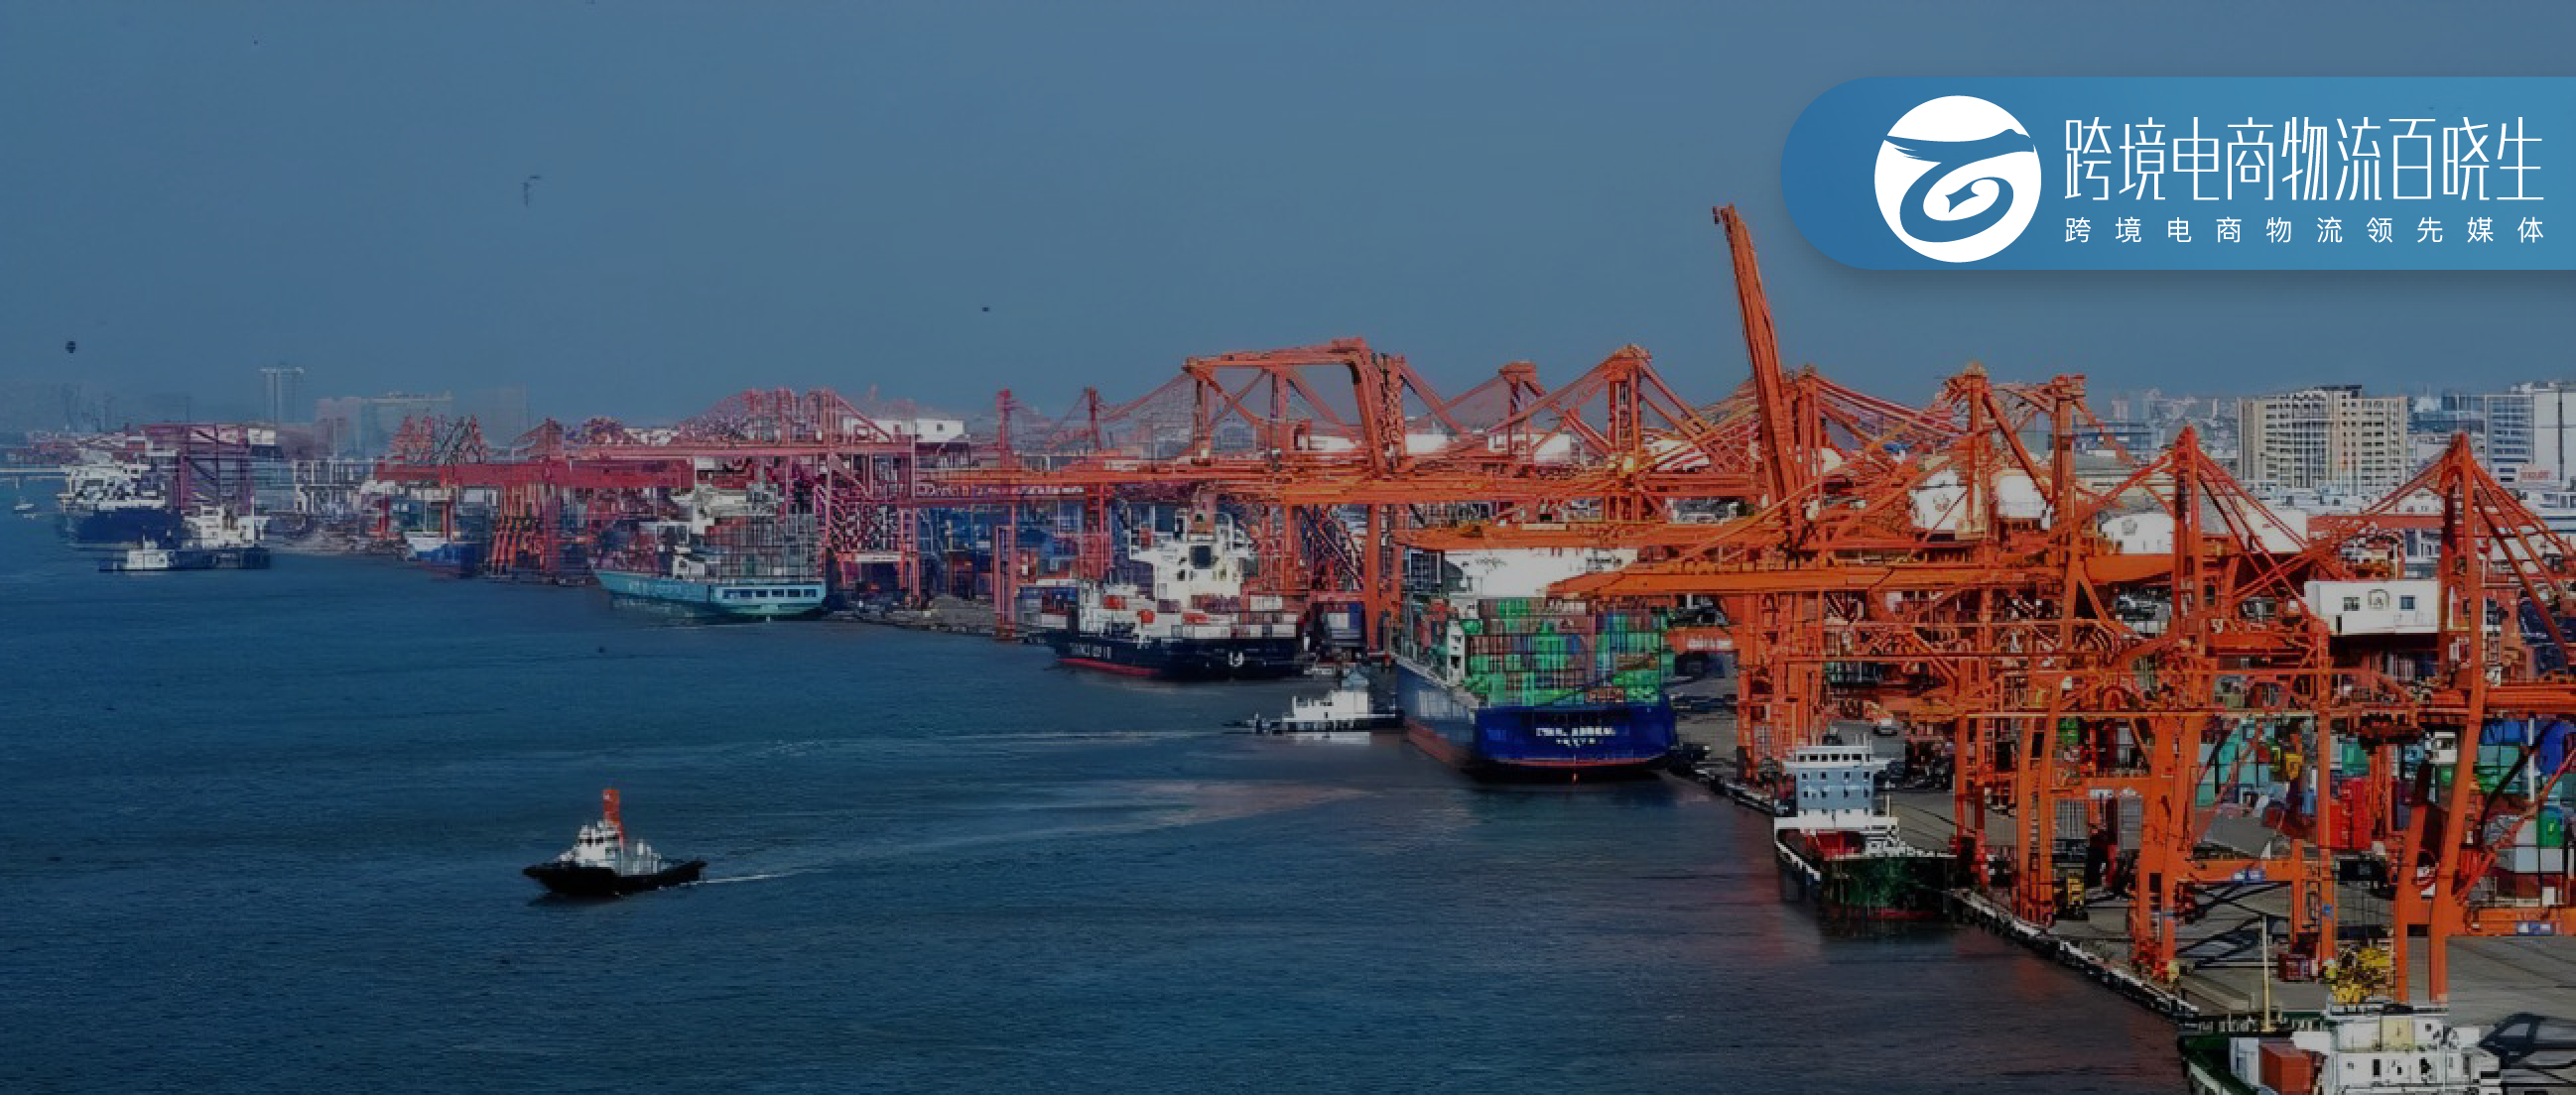 国际货代业再现收购！多家船司提供“路改水”服务保障物流运输效率